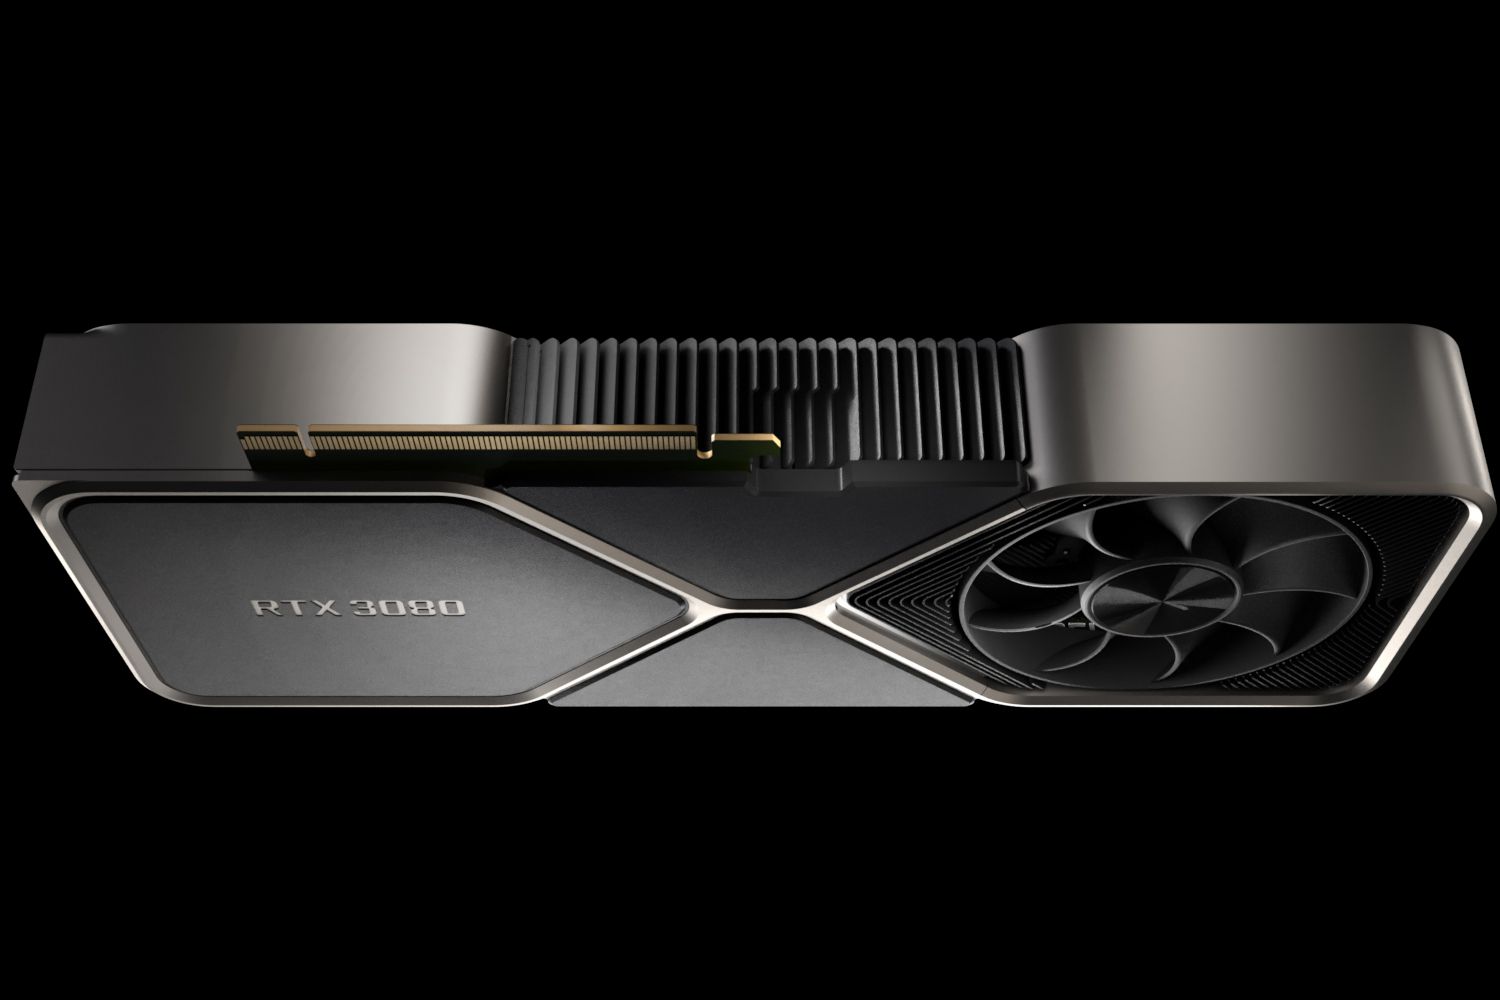 Placa gráfica Nvidia RTX 3080 em um fundo preto